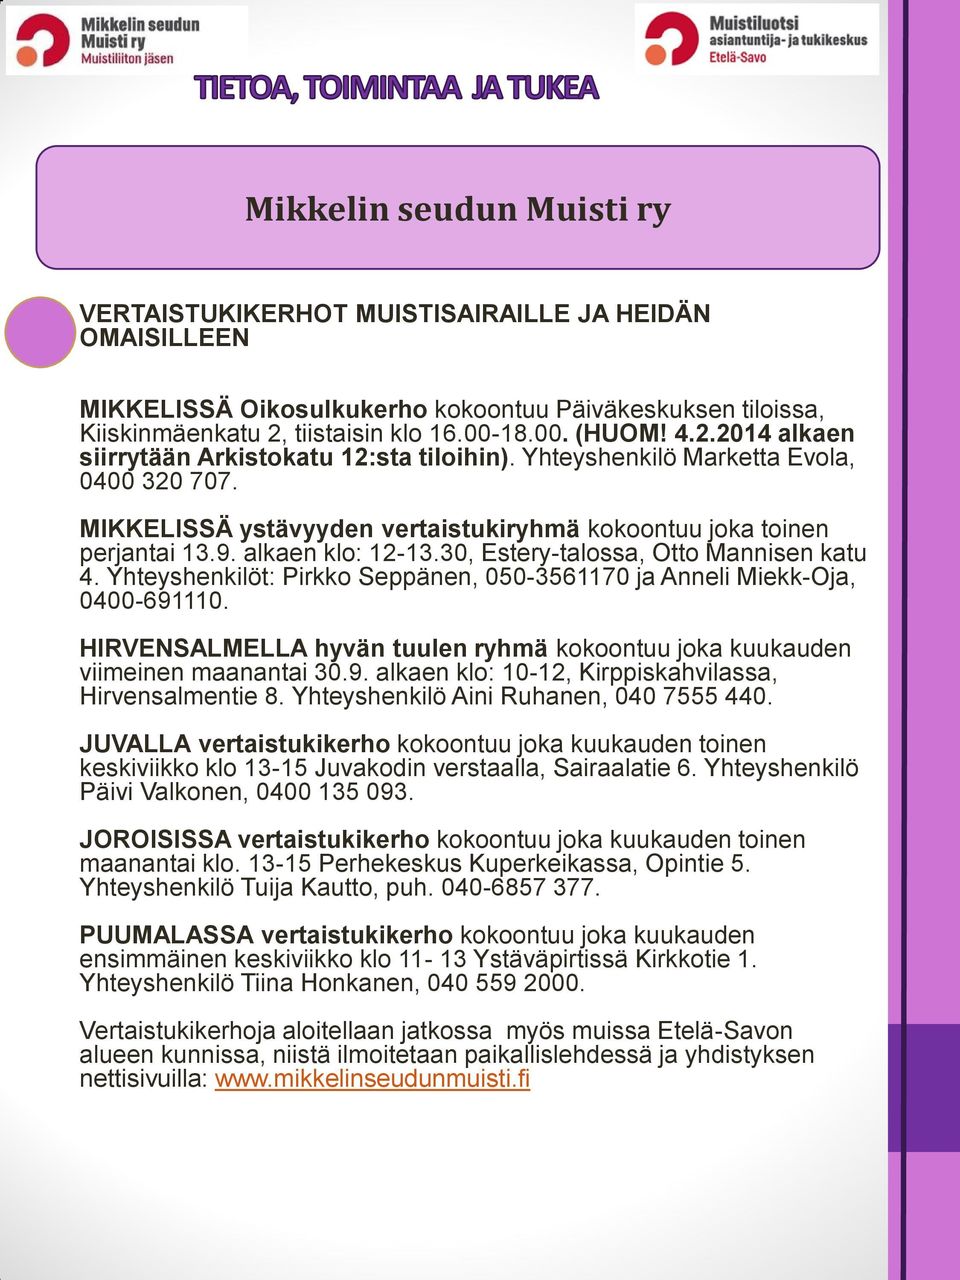 30, Estery-talossa, Otto Mannisen katu 4. Yhteyshenkilöt: Pirkko Seppänen, 050-3561170 ja Anneli Miekk-Oja, 0400-691110.